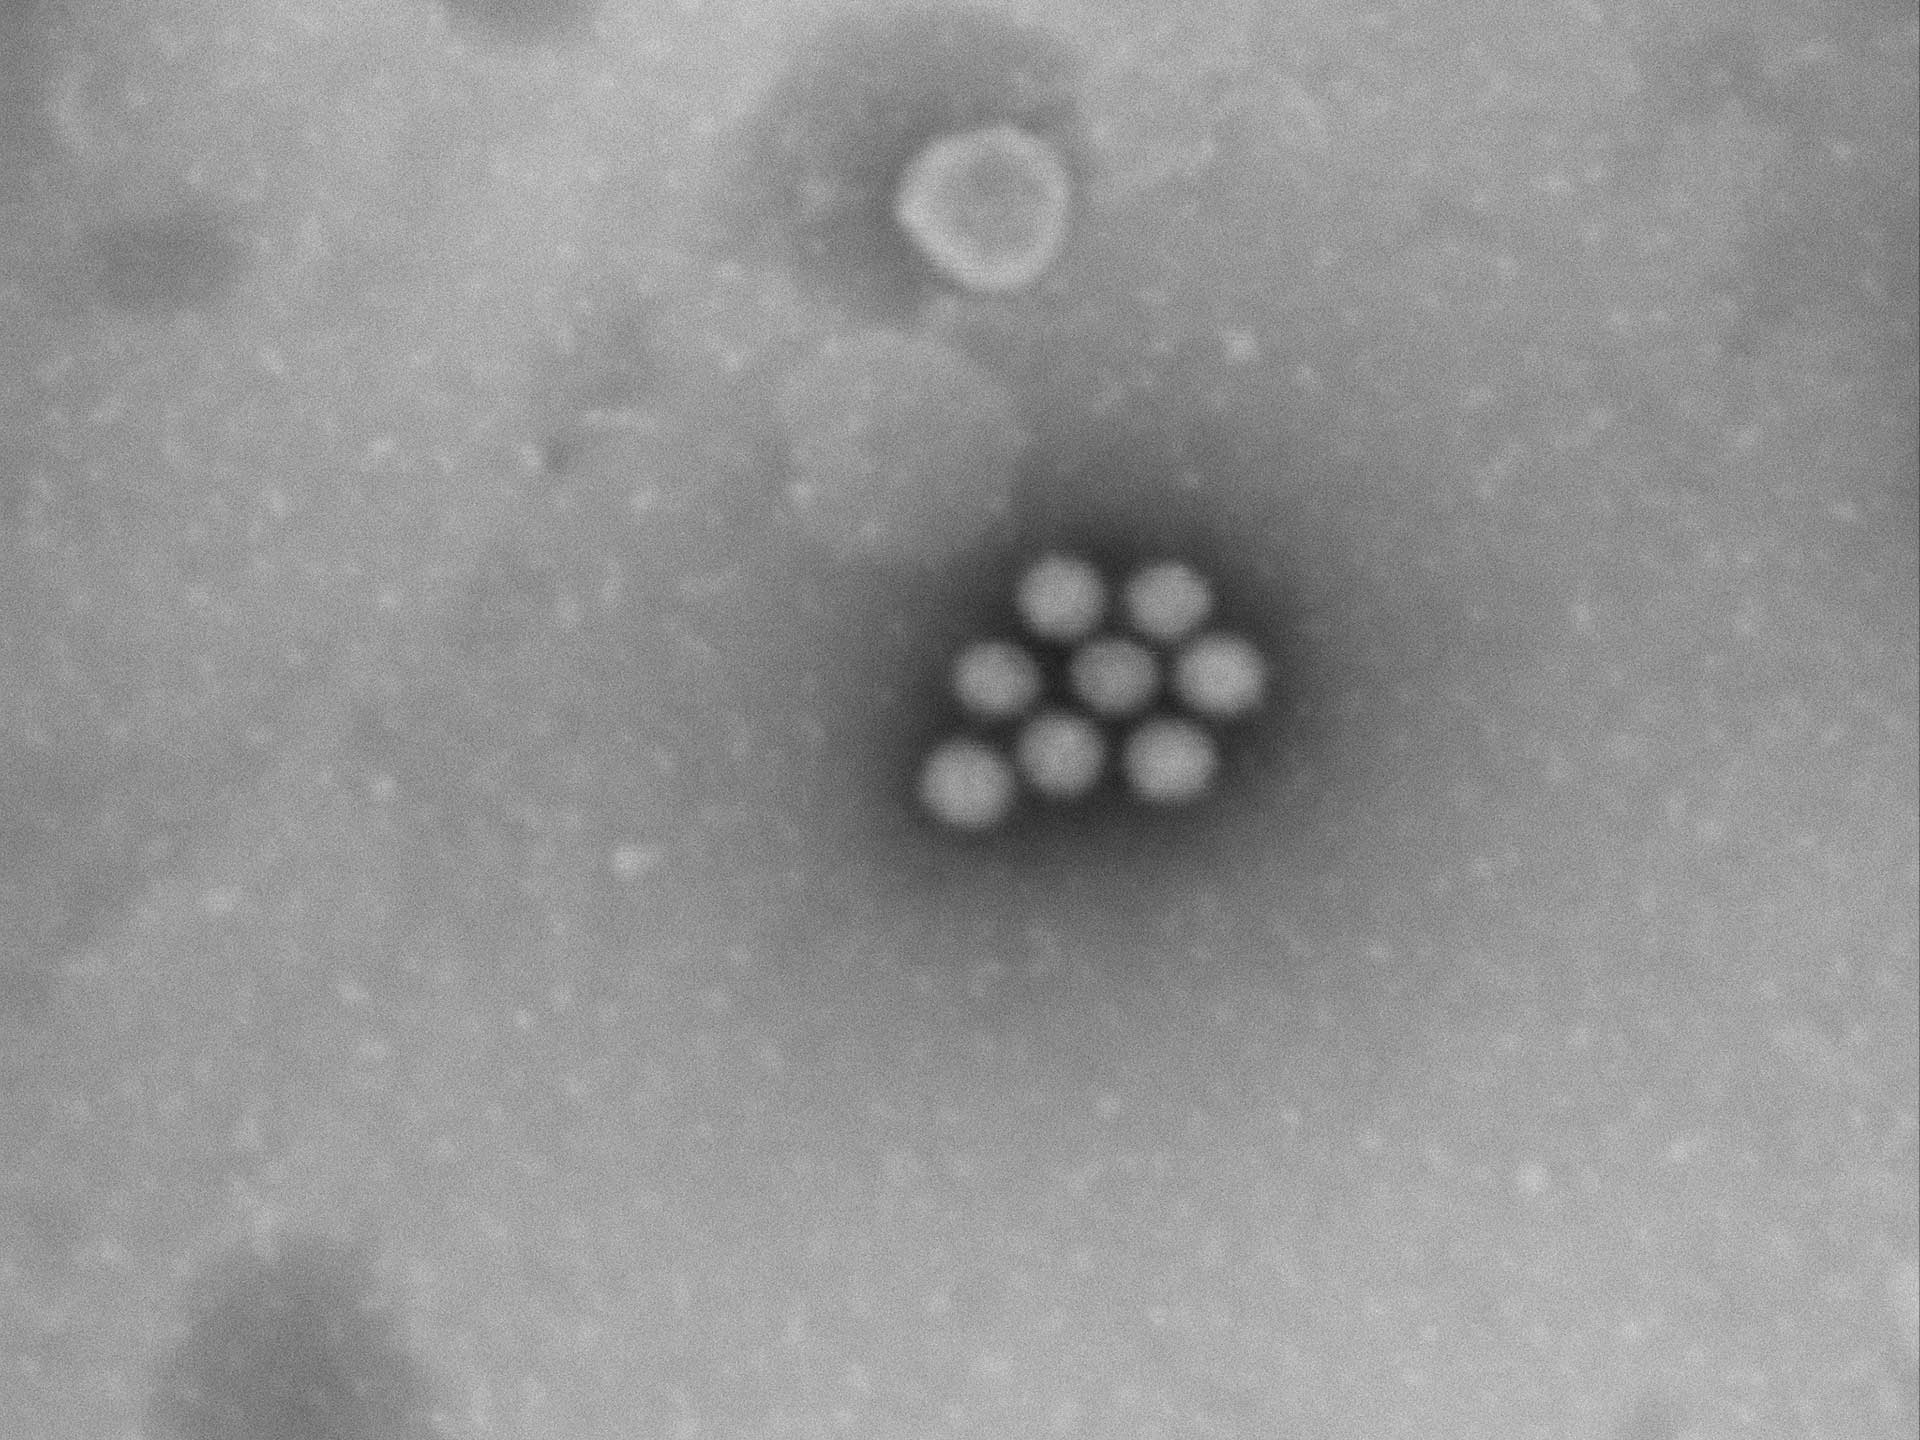 细胞的特征形状表明其为轮状病毒细胞。